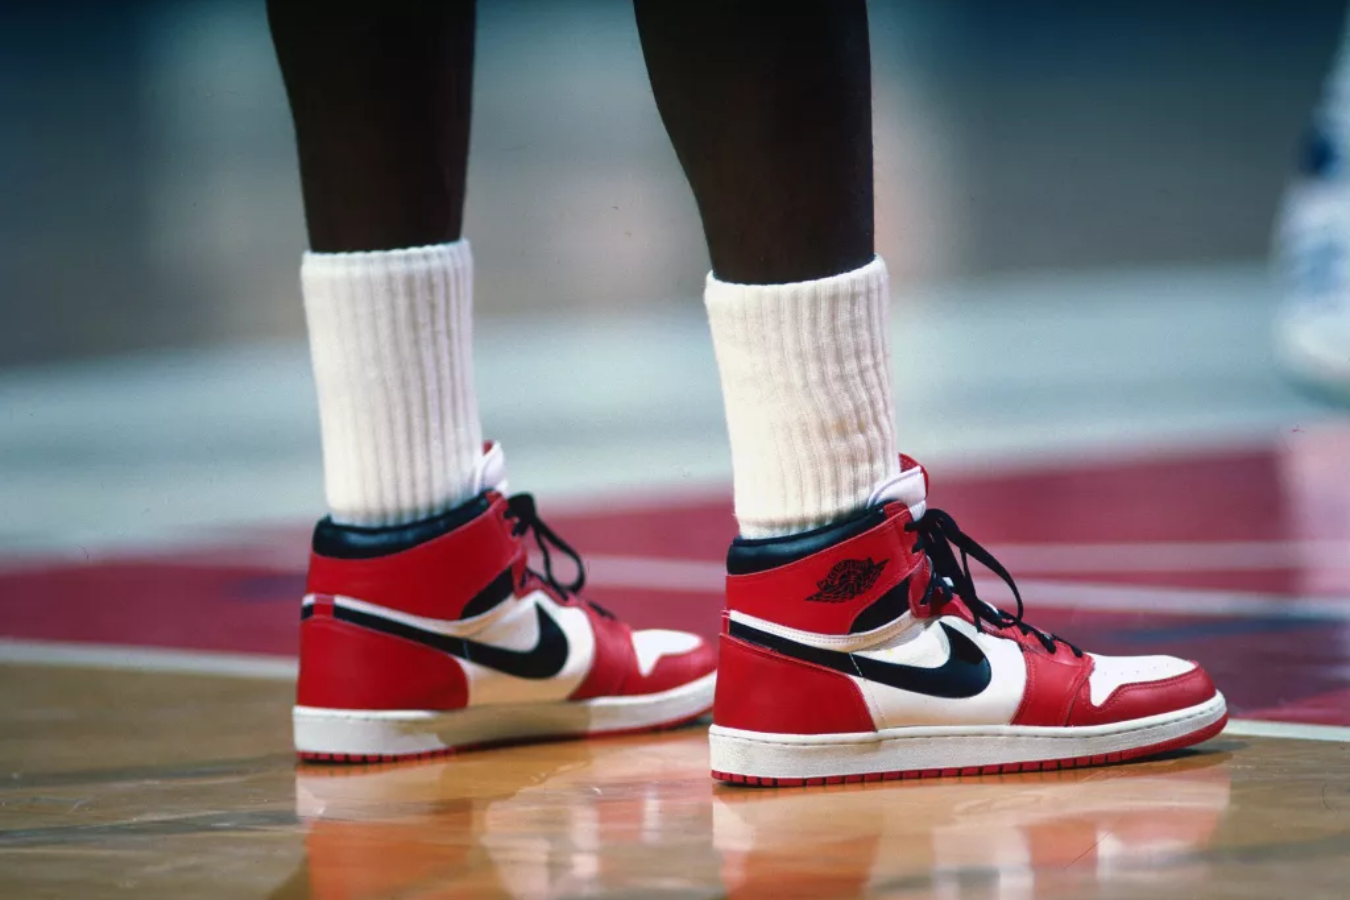 Ofertón de Nike para los más pequeños!: estas zapatillas Jordan